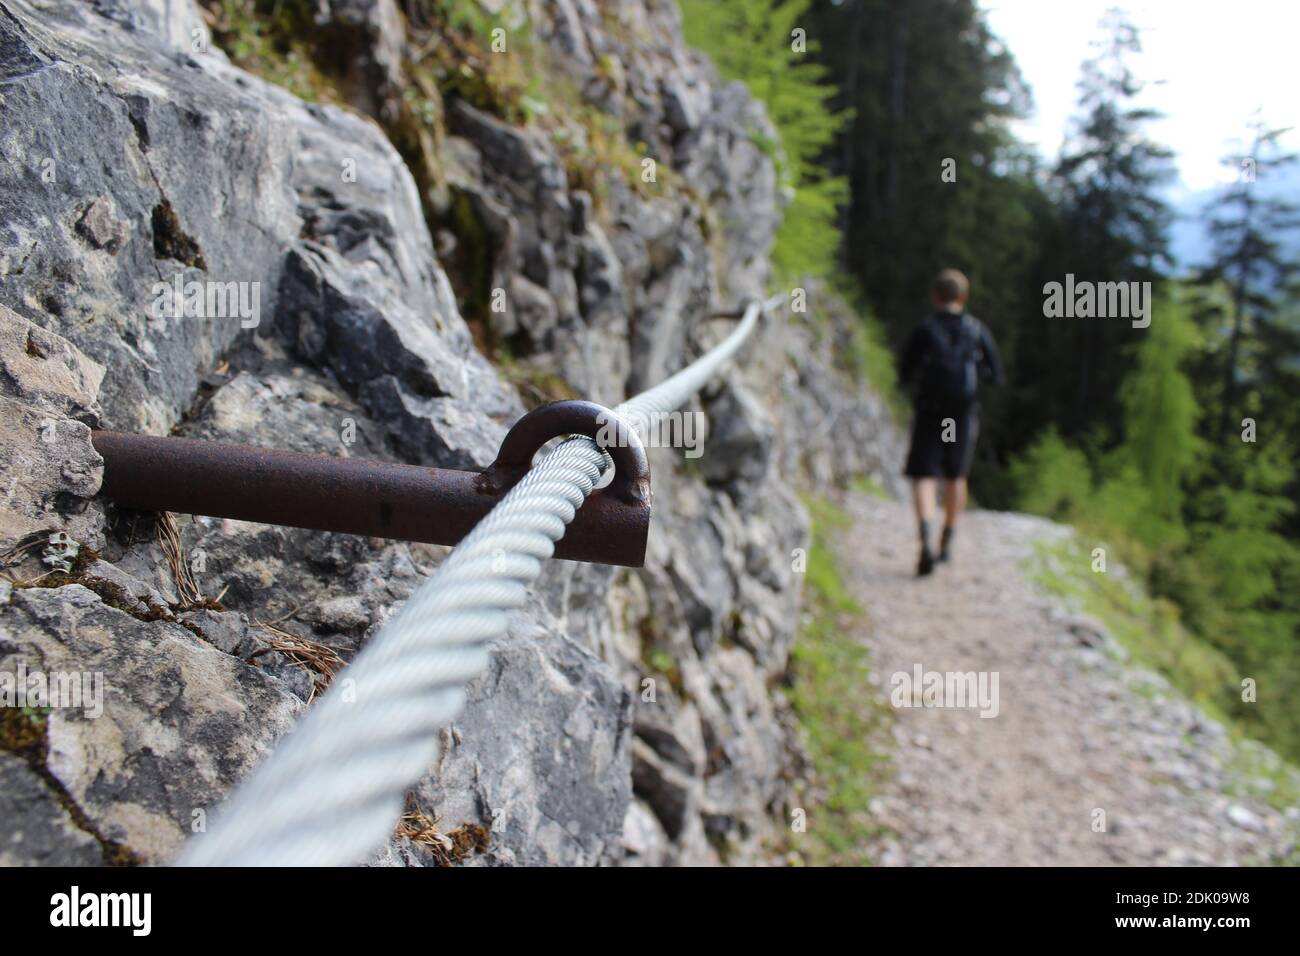 Stahlseil auf dem Weg zur Brunnsteinhütte mit einem Mann im Hintergrund Stockfoto